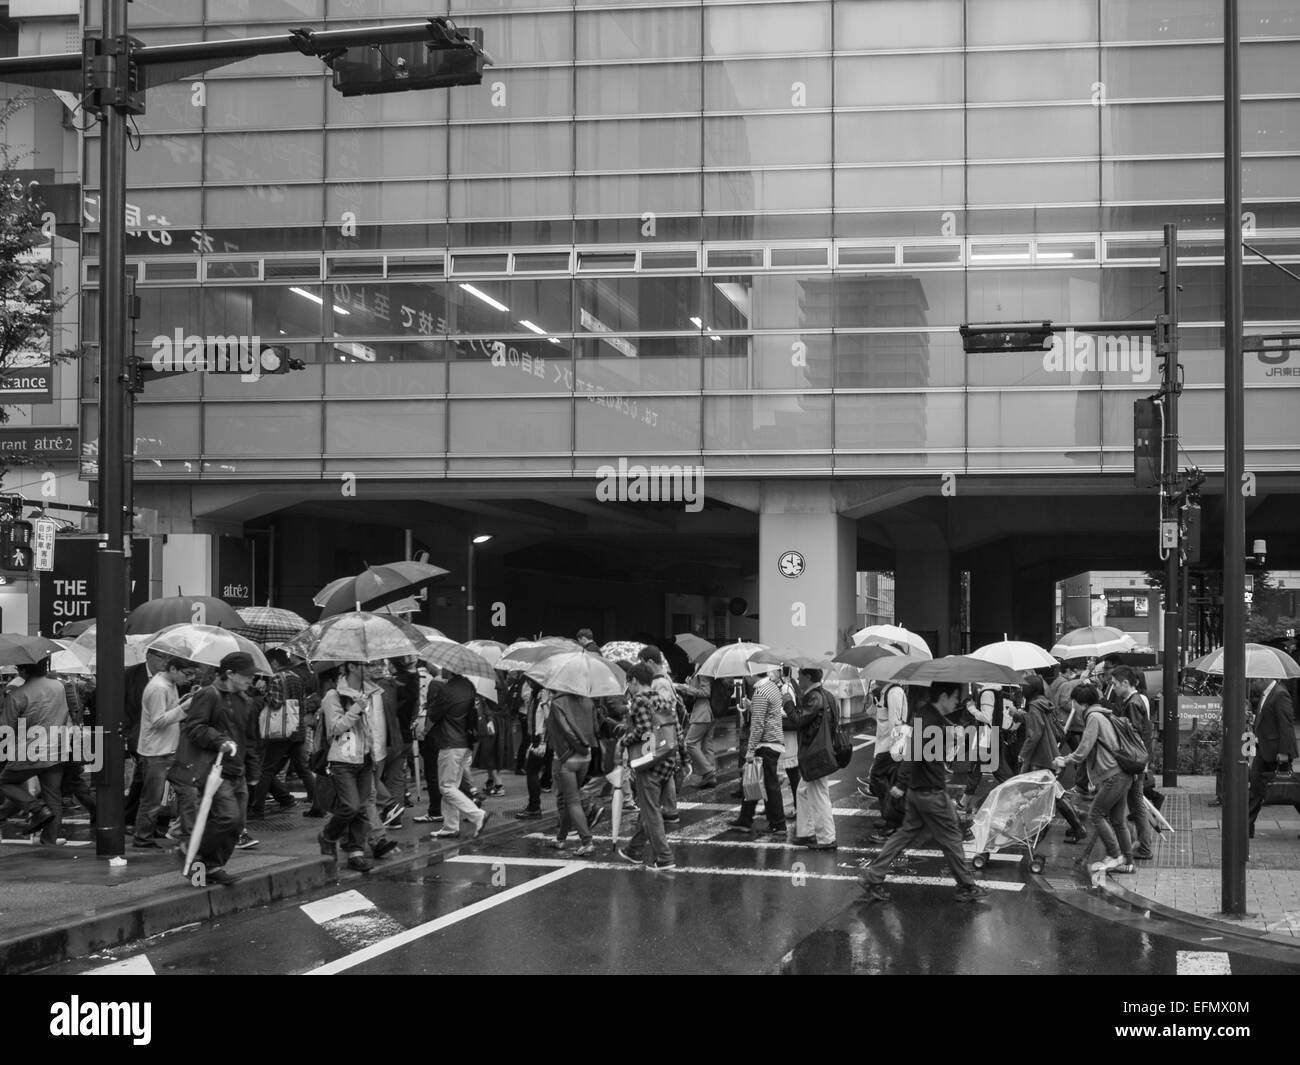 Schwarz / weiß Bild von Passanten auf der Straße mit öffnen Sonnenschirme im Regen Stockfoto